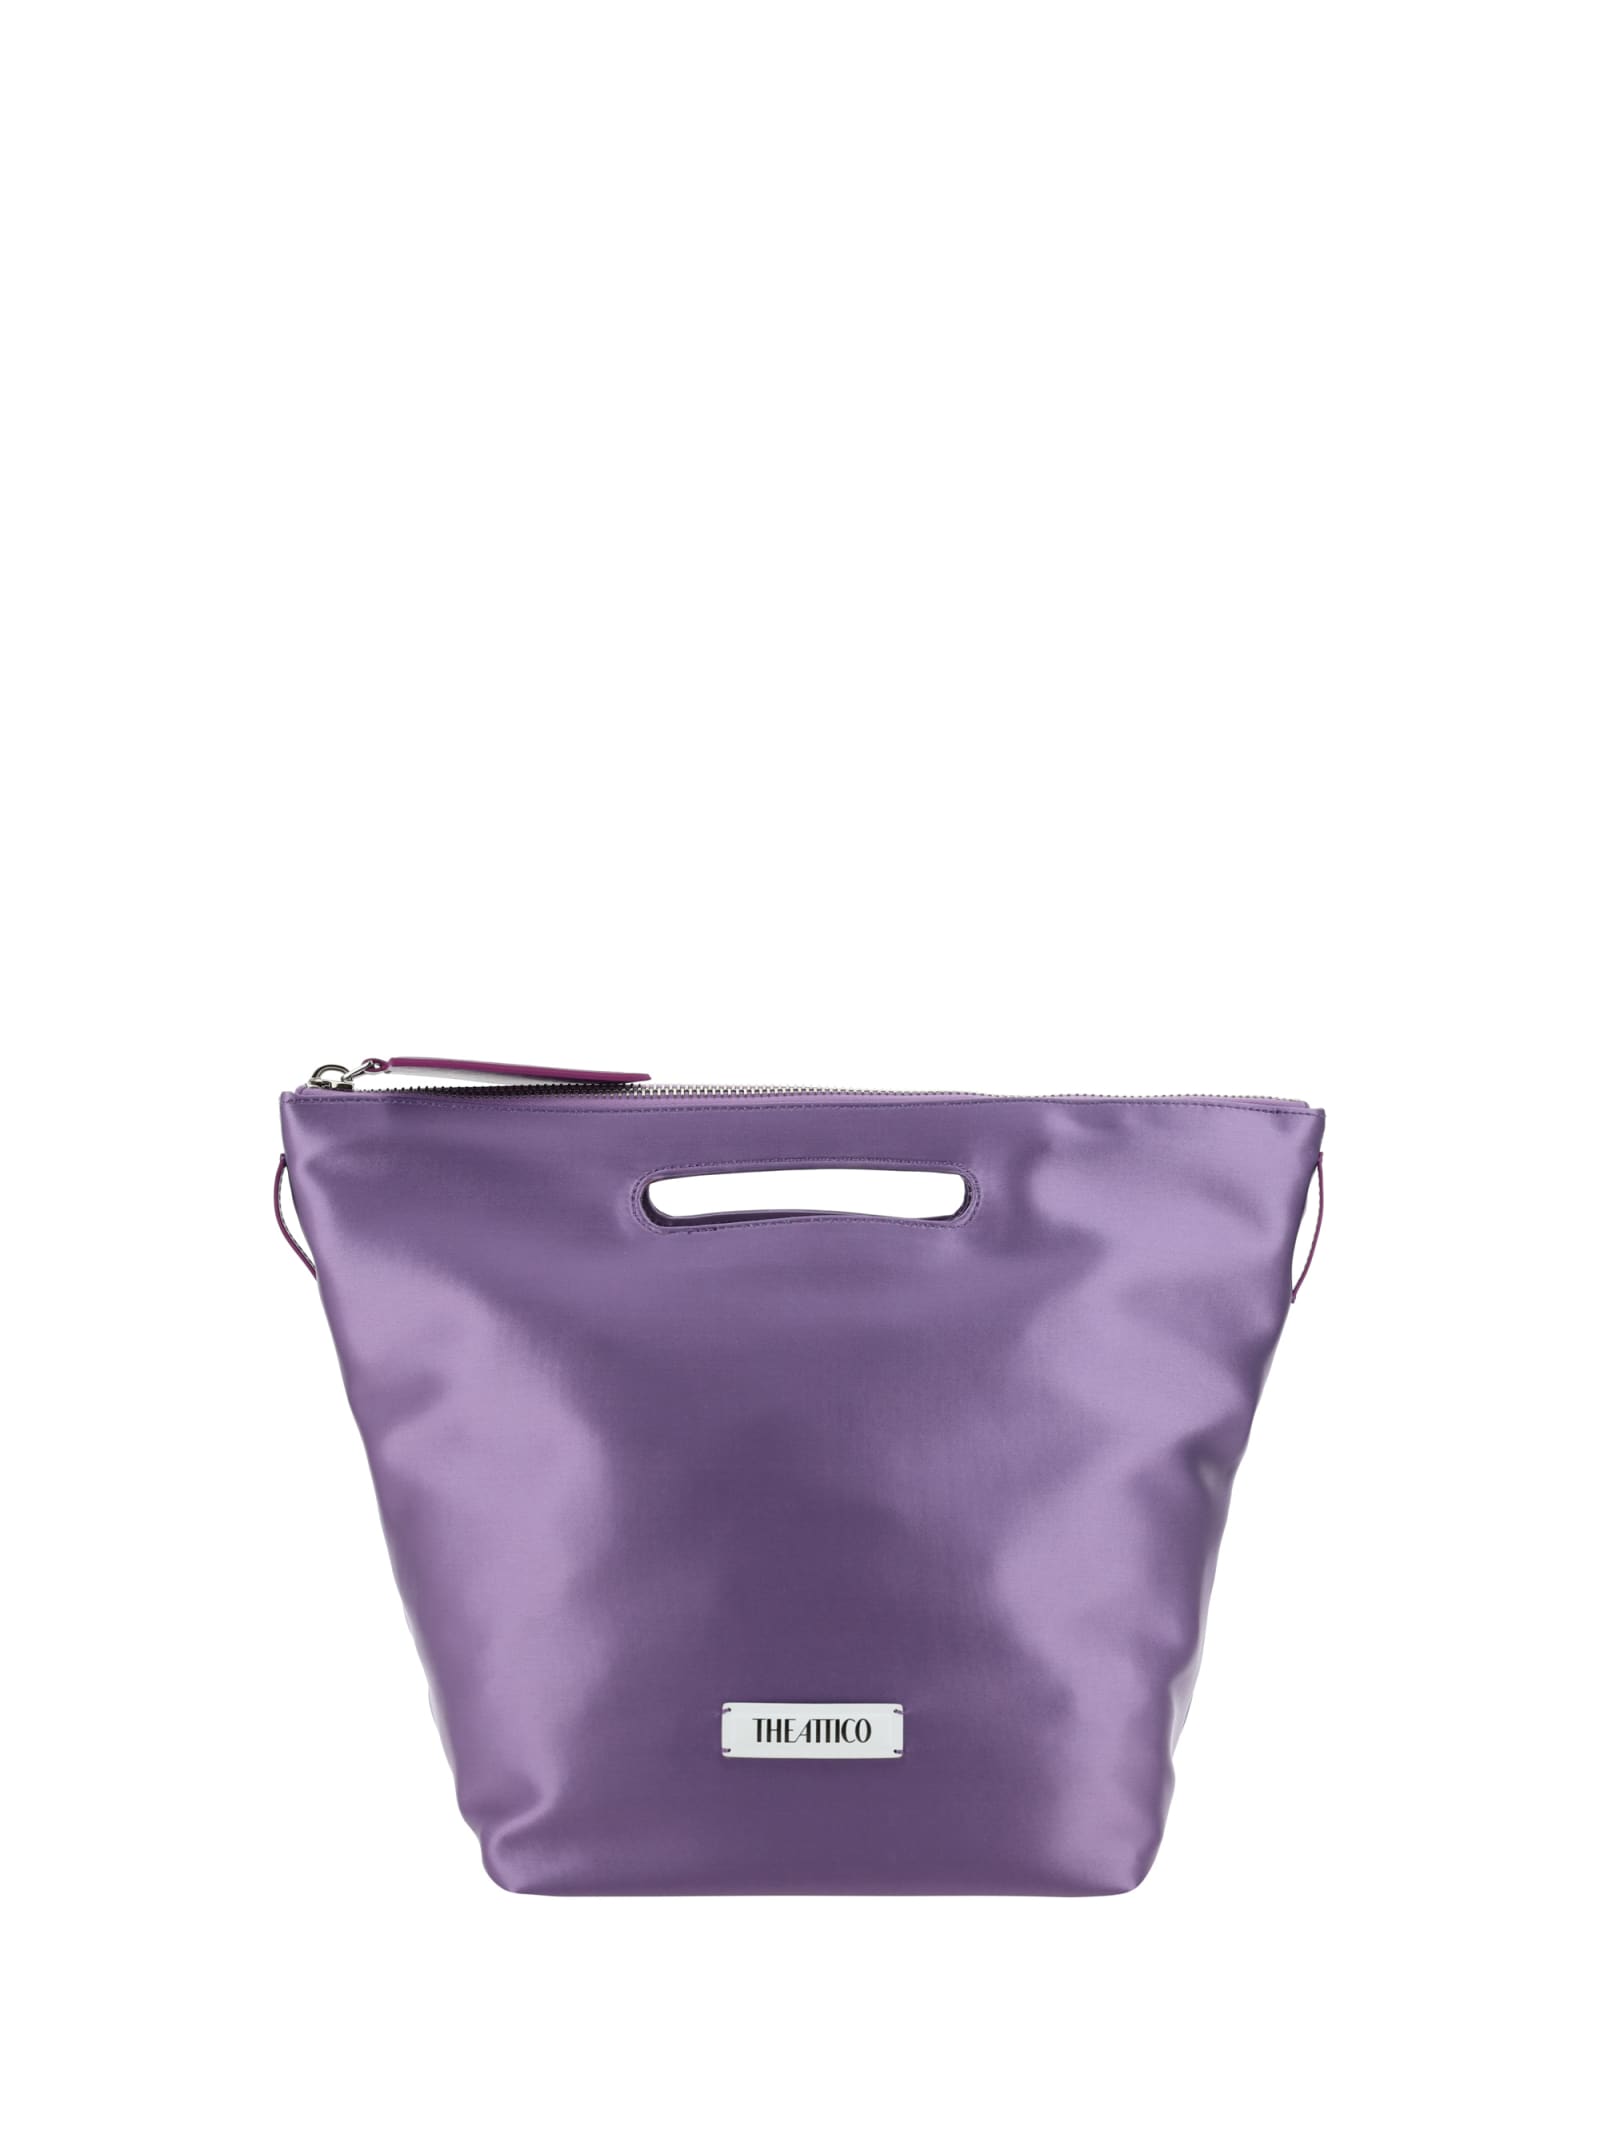 Attico Via Dei Giardini 30 Handbag In Lilac